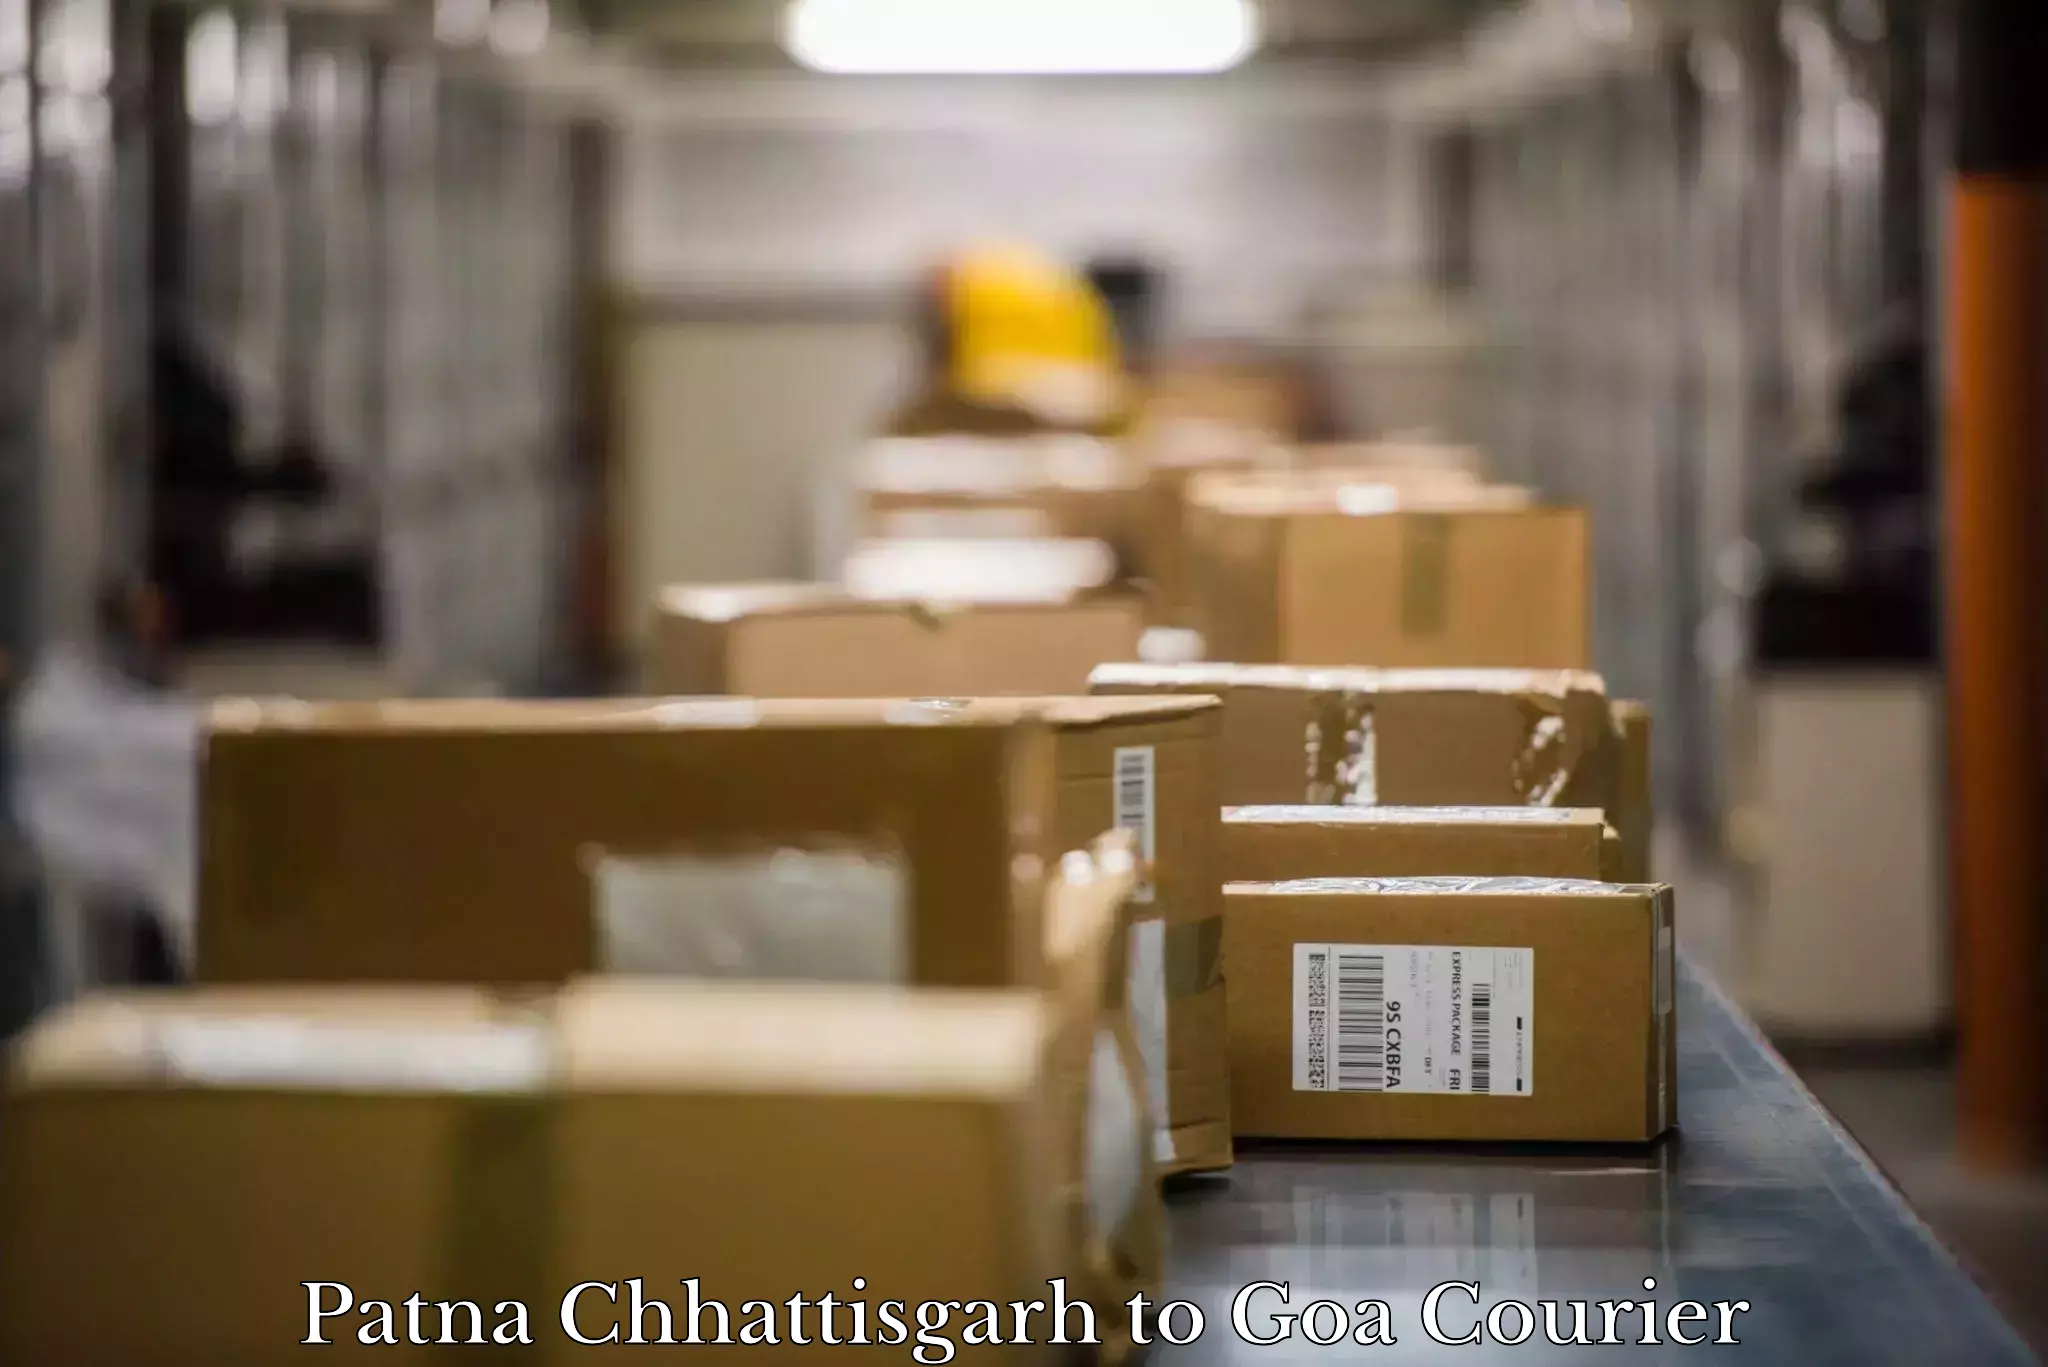 Furniture transport solutions Patna Chhattisgarh to Goa